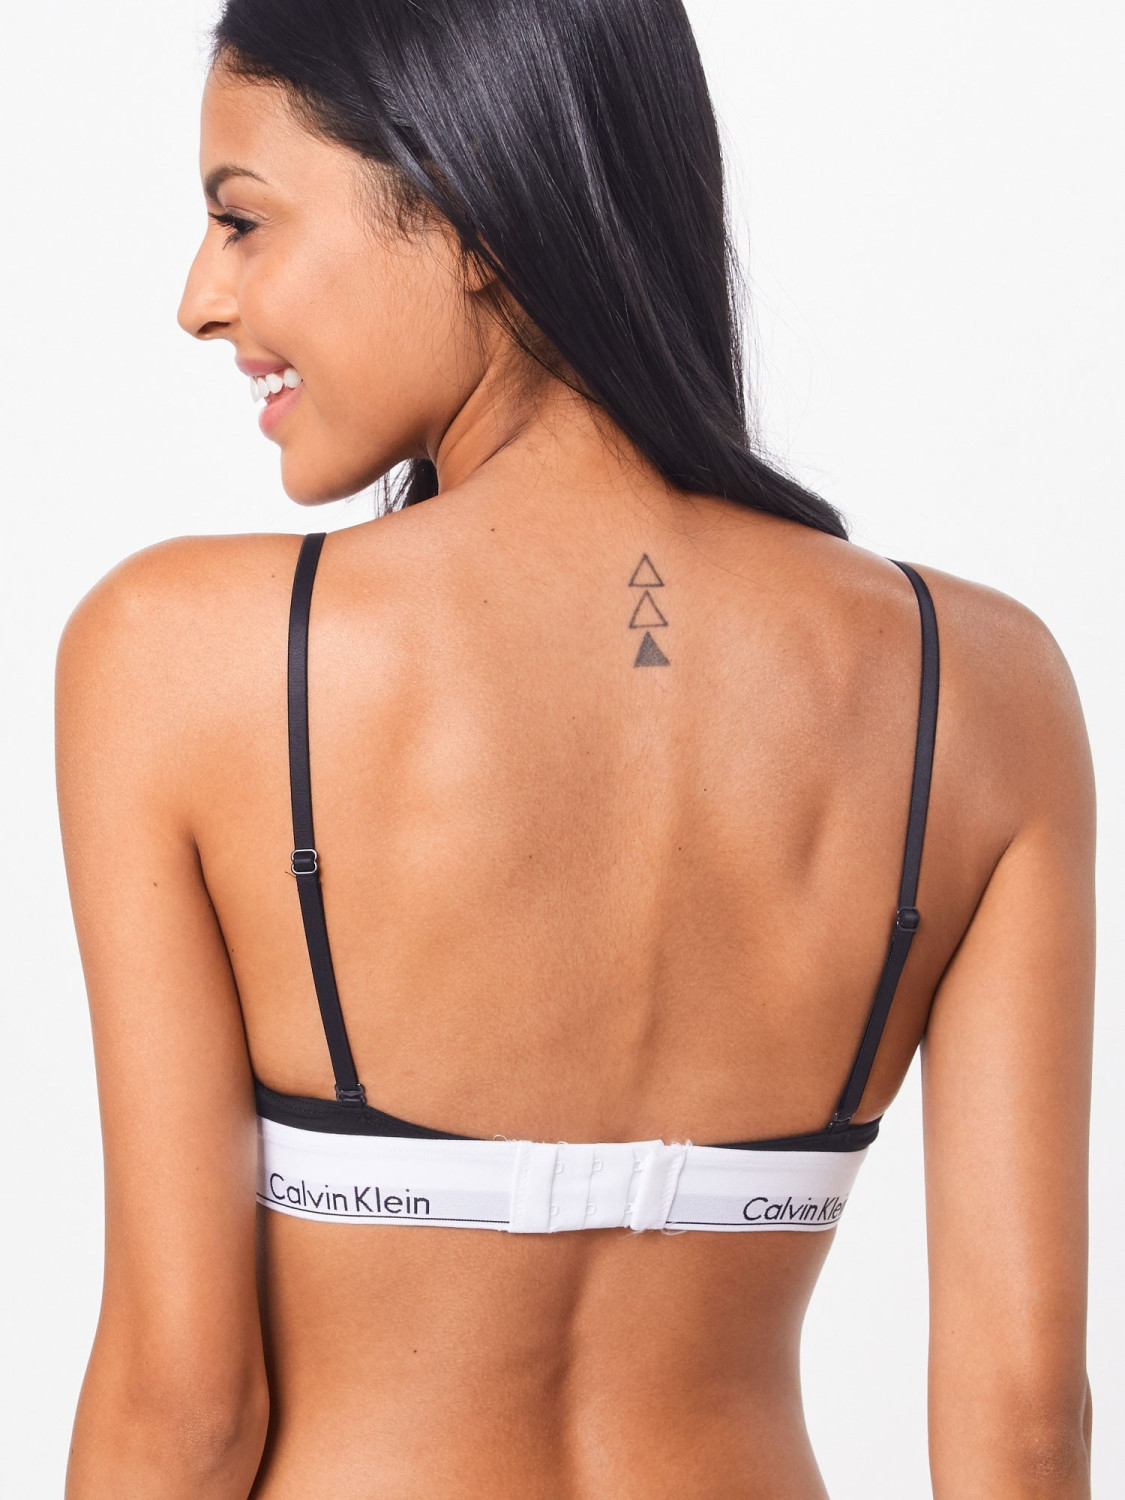 Buy Calvin Klein Modern Cotton Triangle Bra black from £18.99